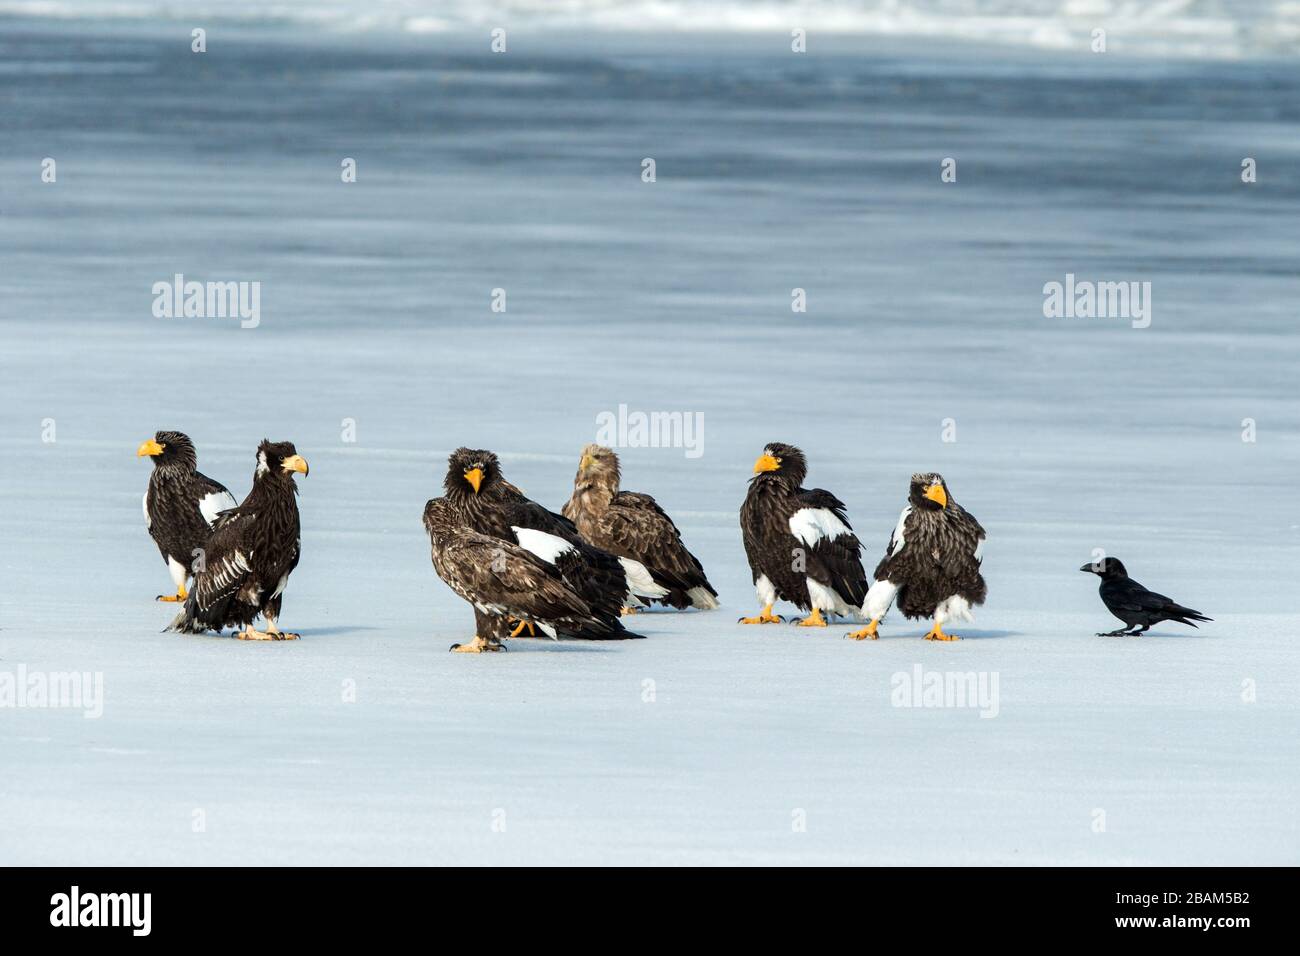 Troupeau d'aigles de mer de Steller et d'aigles à queue blanche combattant sur les poissons sur le lac gelé, Hokkaido, Japon, majestueux rapaces de mer avec de grandes griffes et beak Banque D'Images